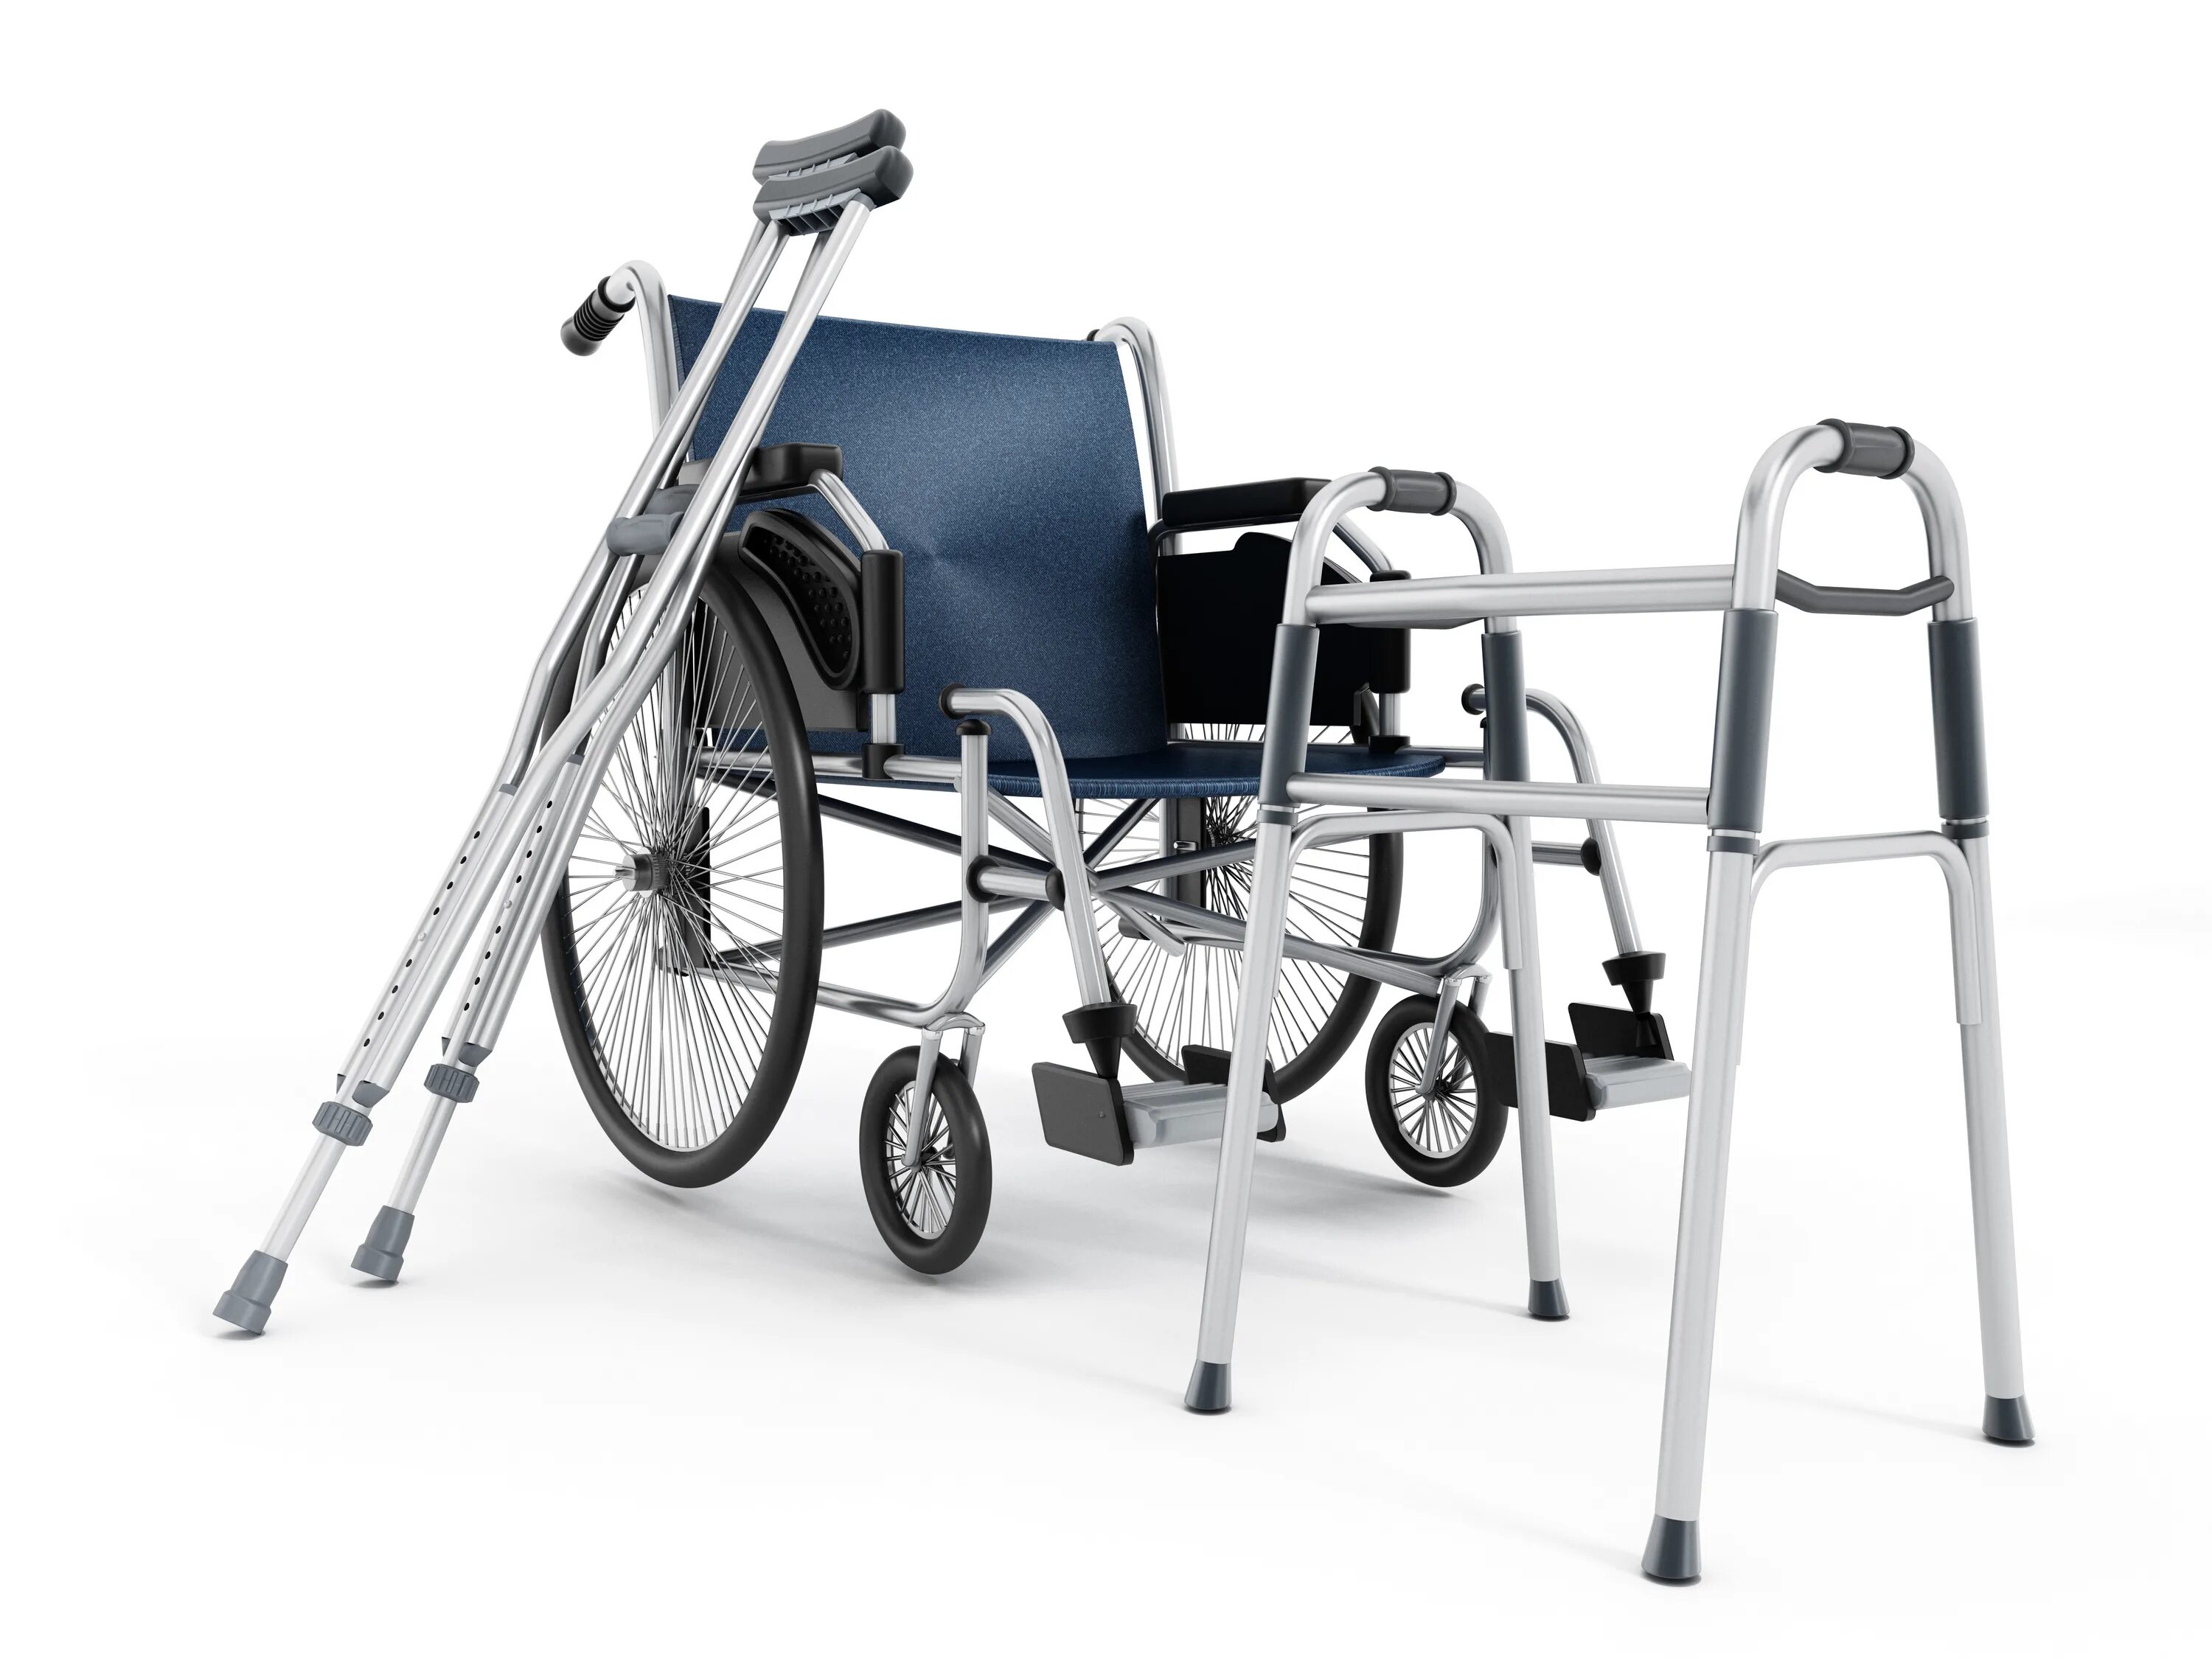 ТСР средства реабилитации. Электронный сертификат на ТСР для инвалидов 2021. Техсредства для реабилитации инвалидов. Классификатор ТСР для инвалидов 2022.